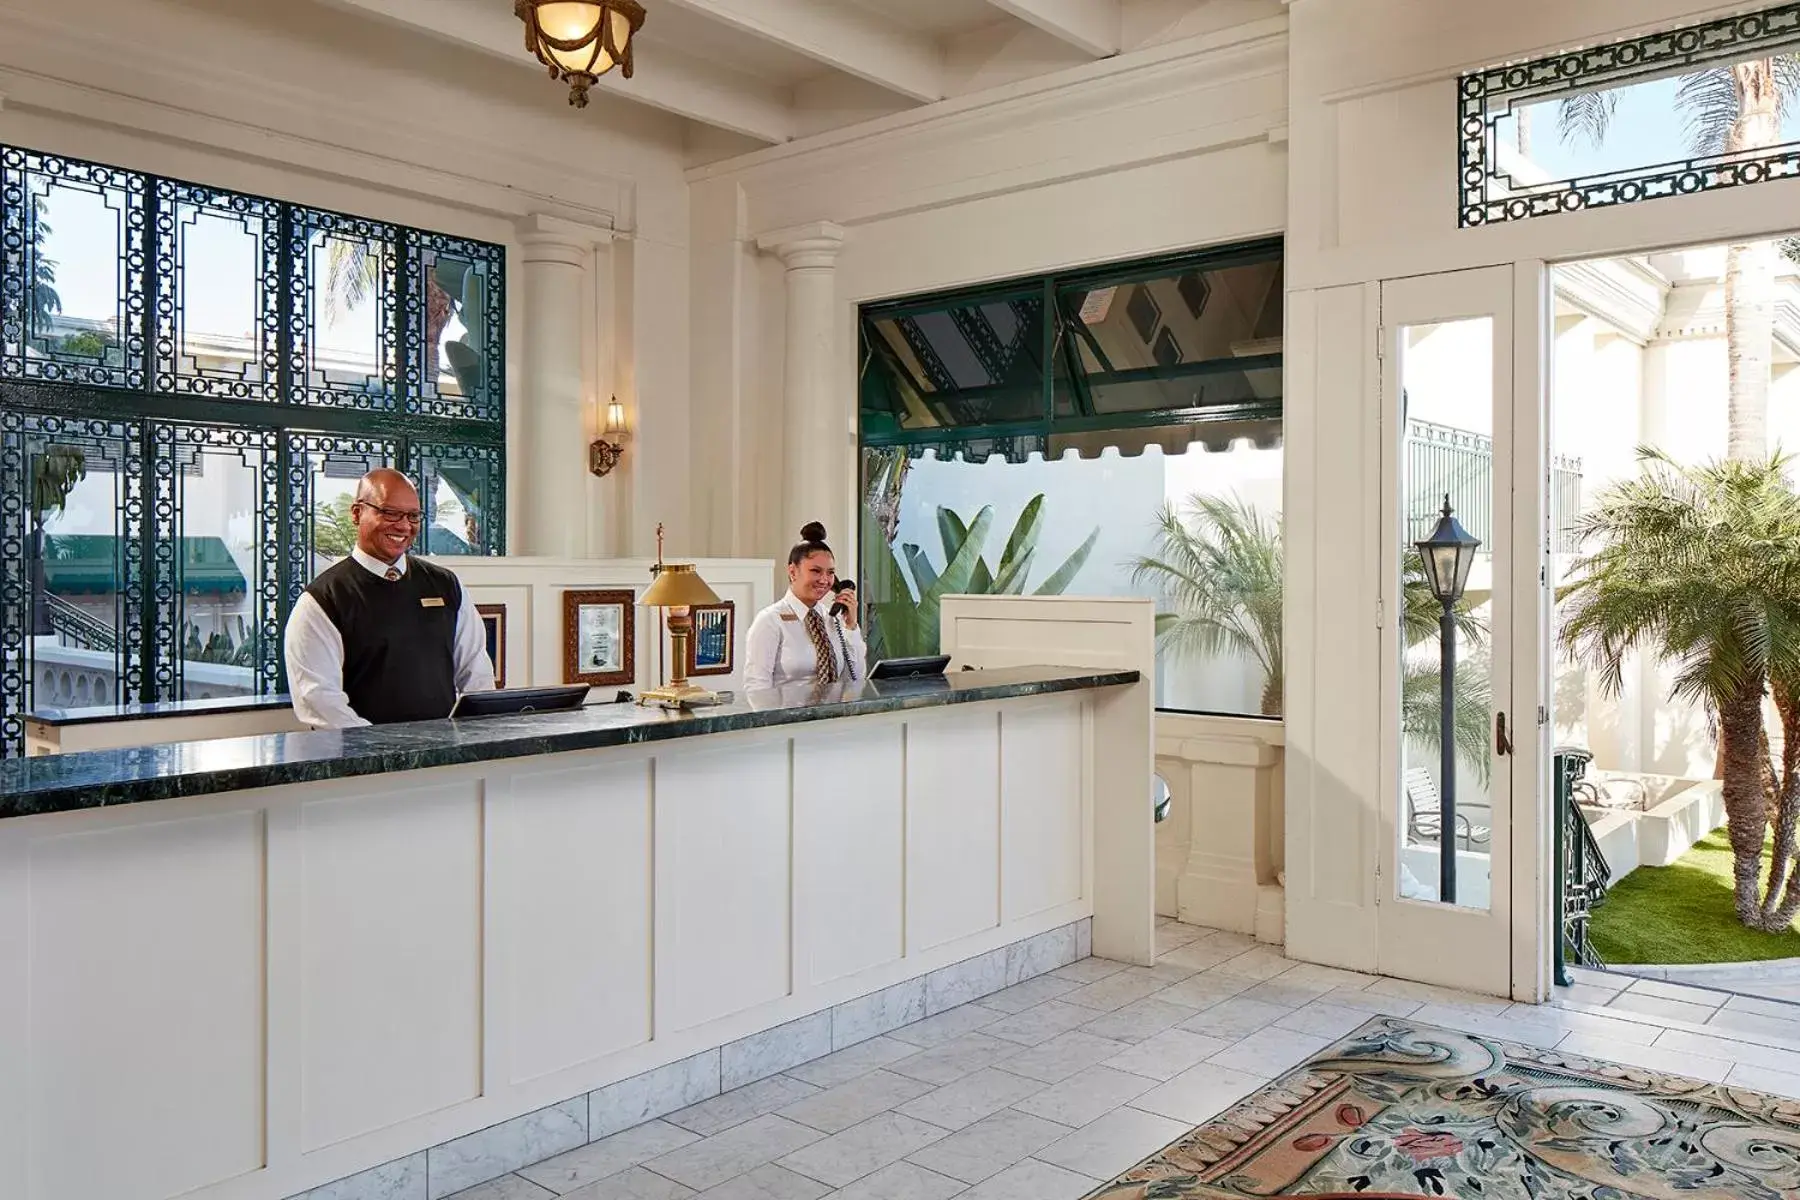 Lobby or reception, Lobby/Reception in Glorietta Bay Inn